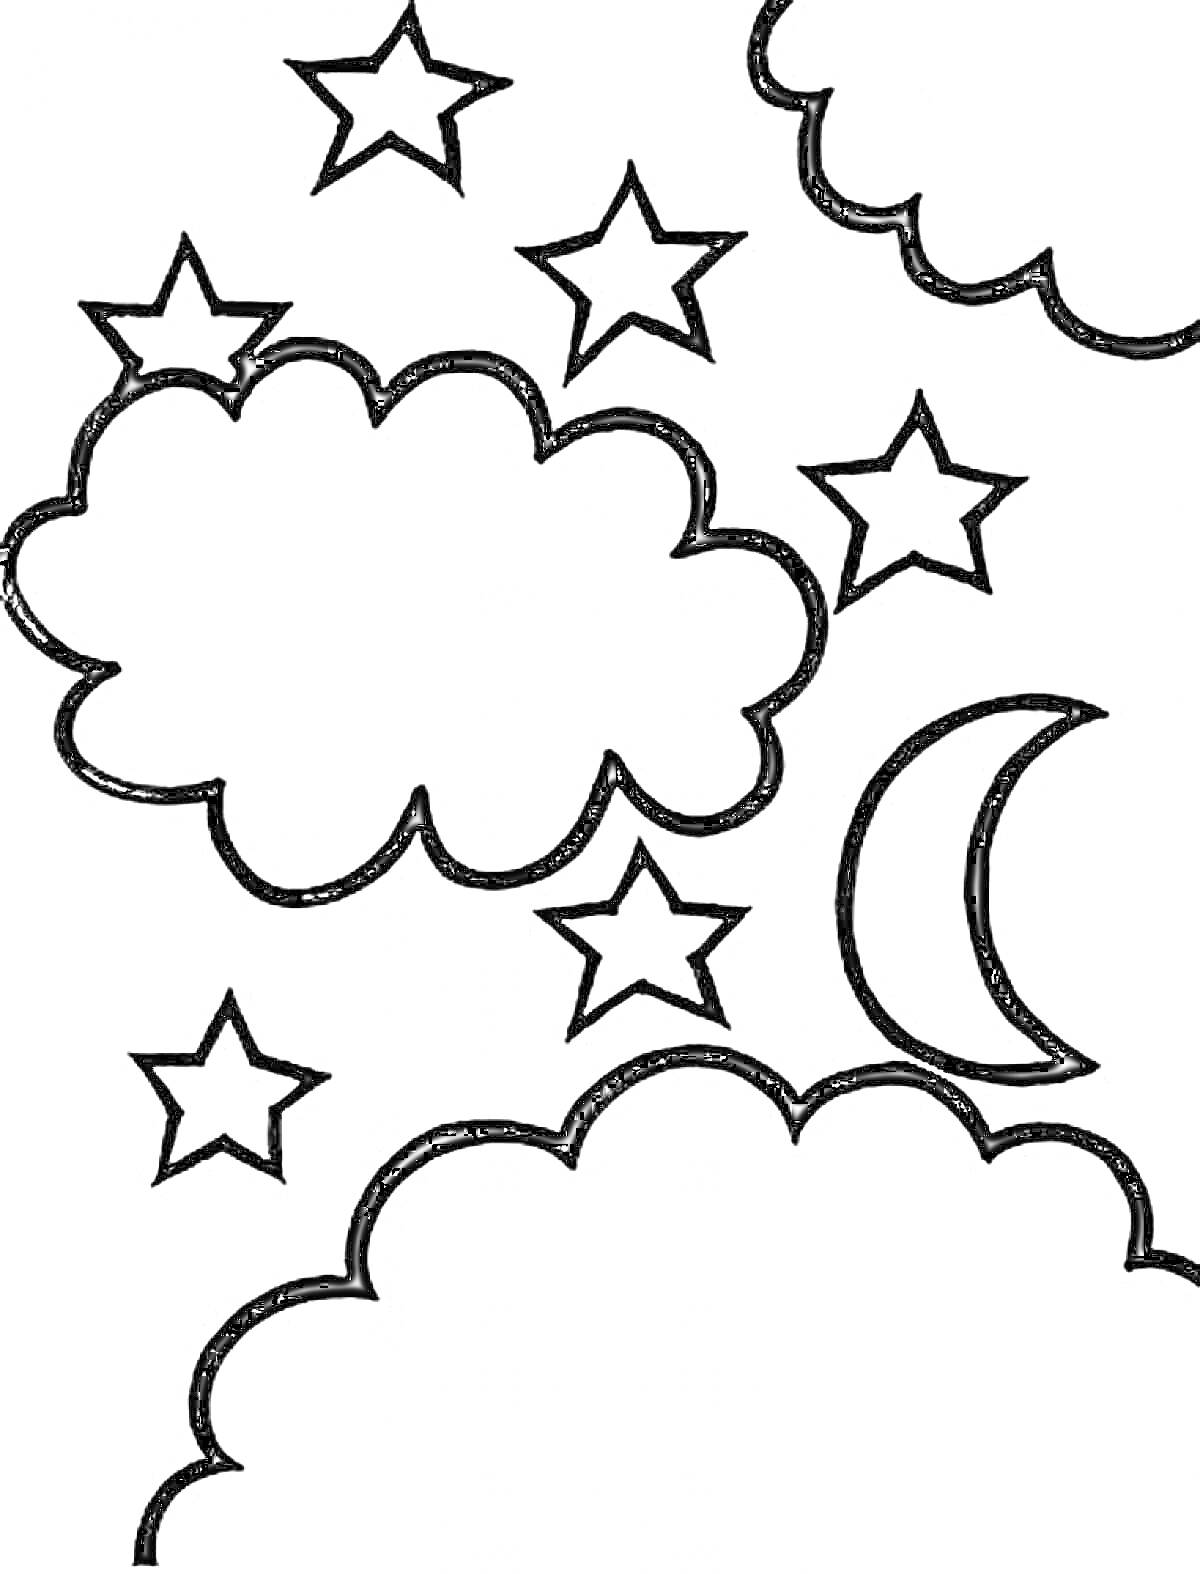 Облака, звезды и месяц на звездном небе